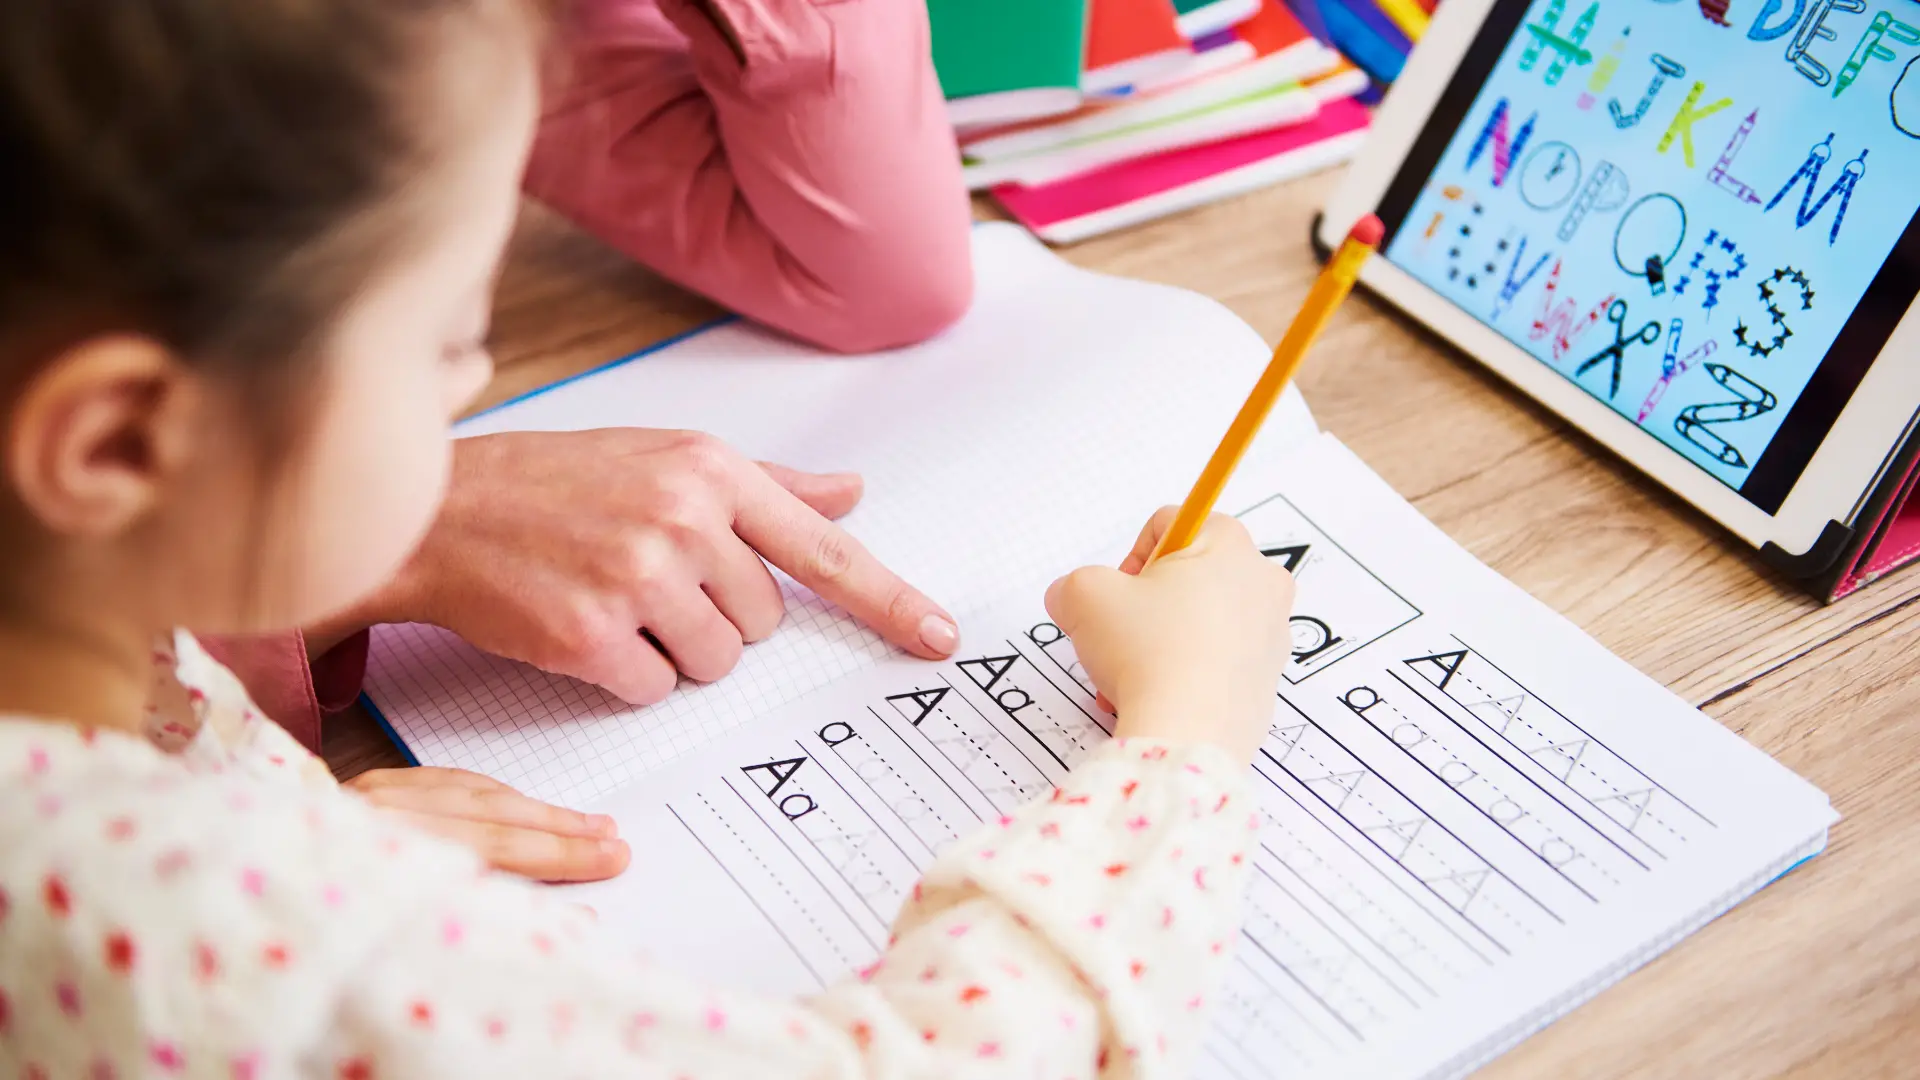 18 Ways To Teach An Autistic Child To Write Their Name ✍️ - Safe